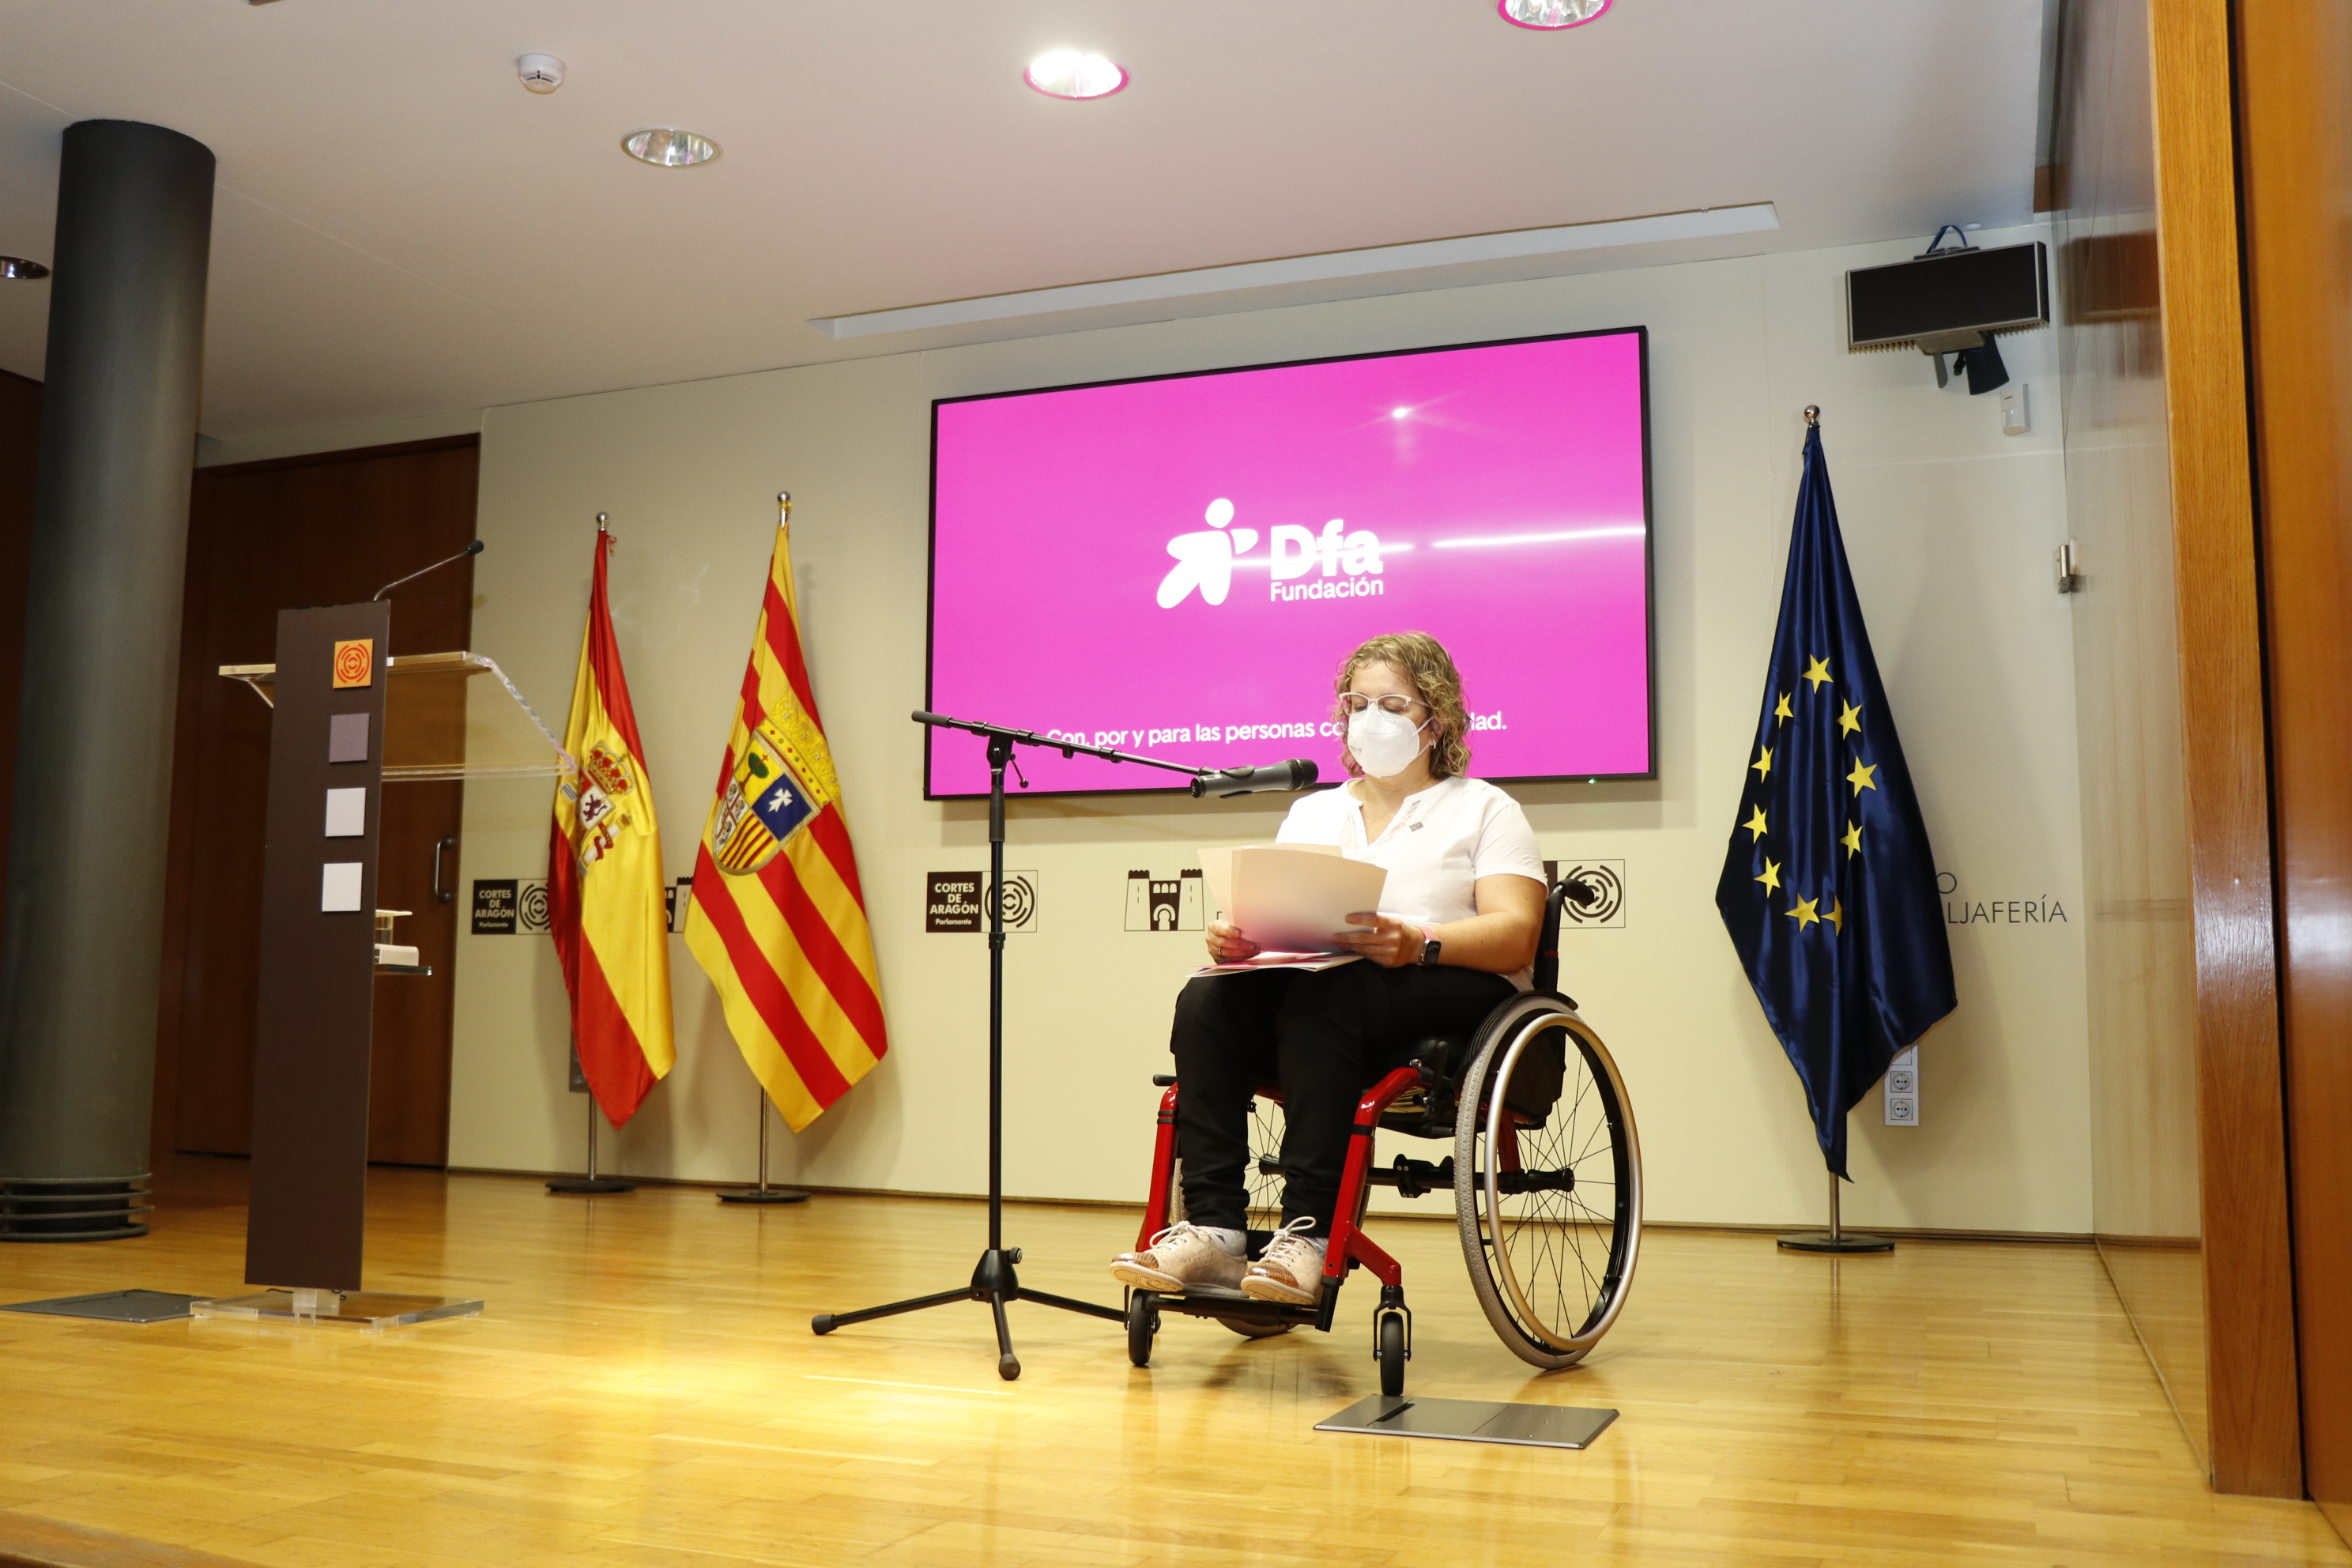 Marta Valencia presenta la nueva imagen de Dfa en Zaragoza